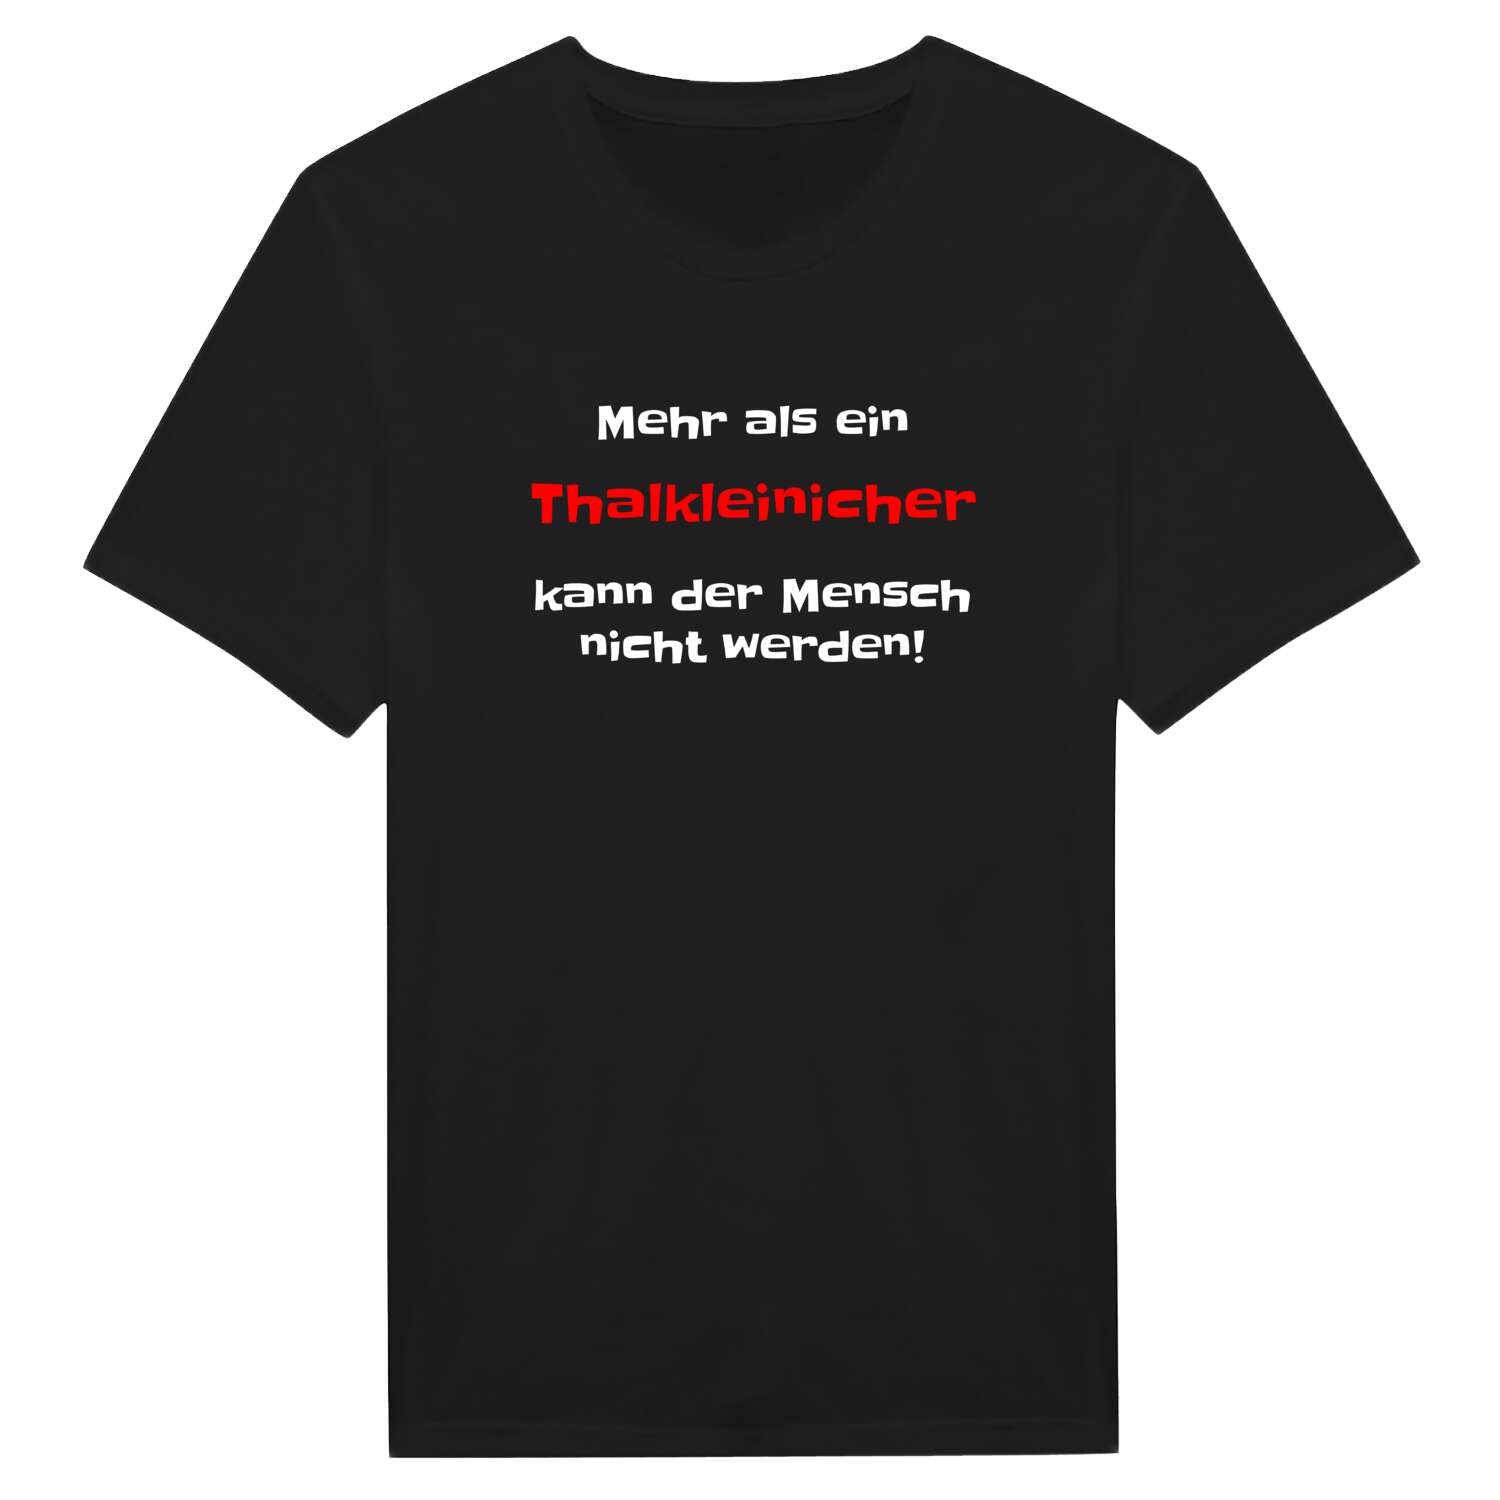 Thalkleinich T-Shirt »Mehr als ein«